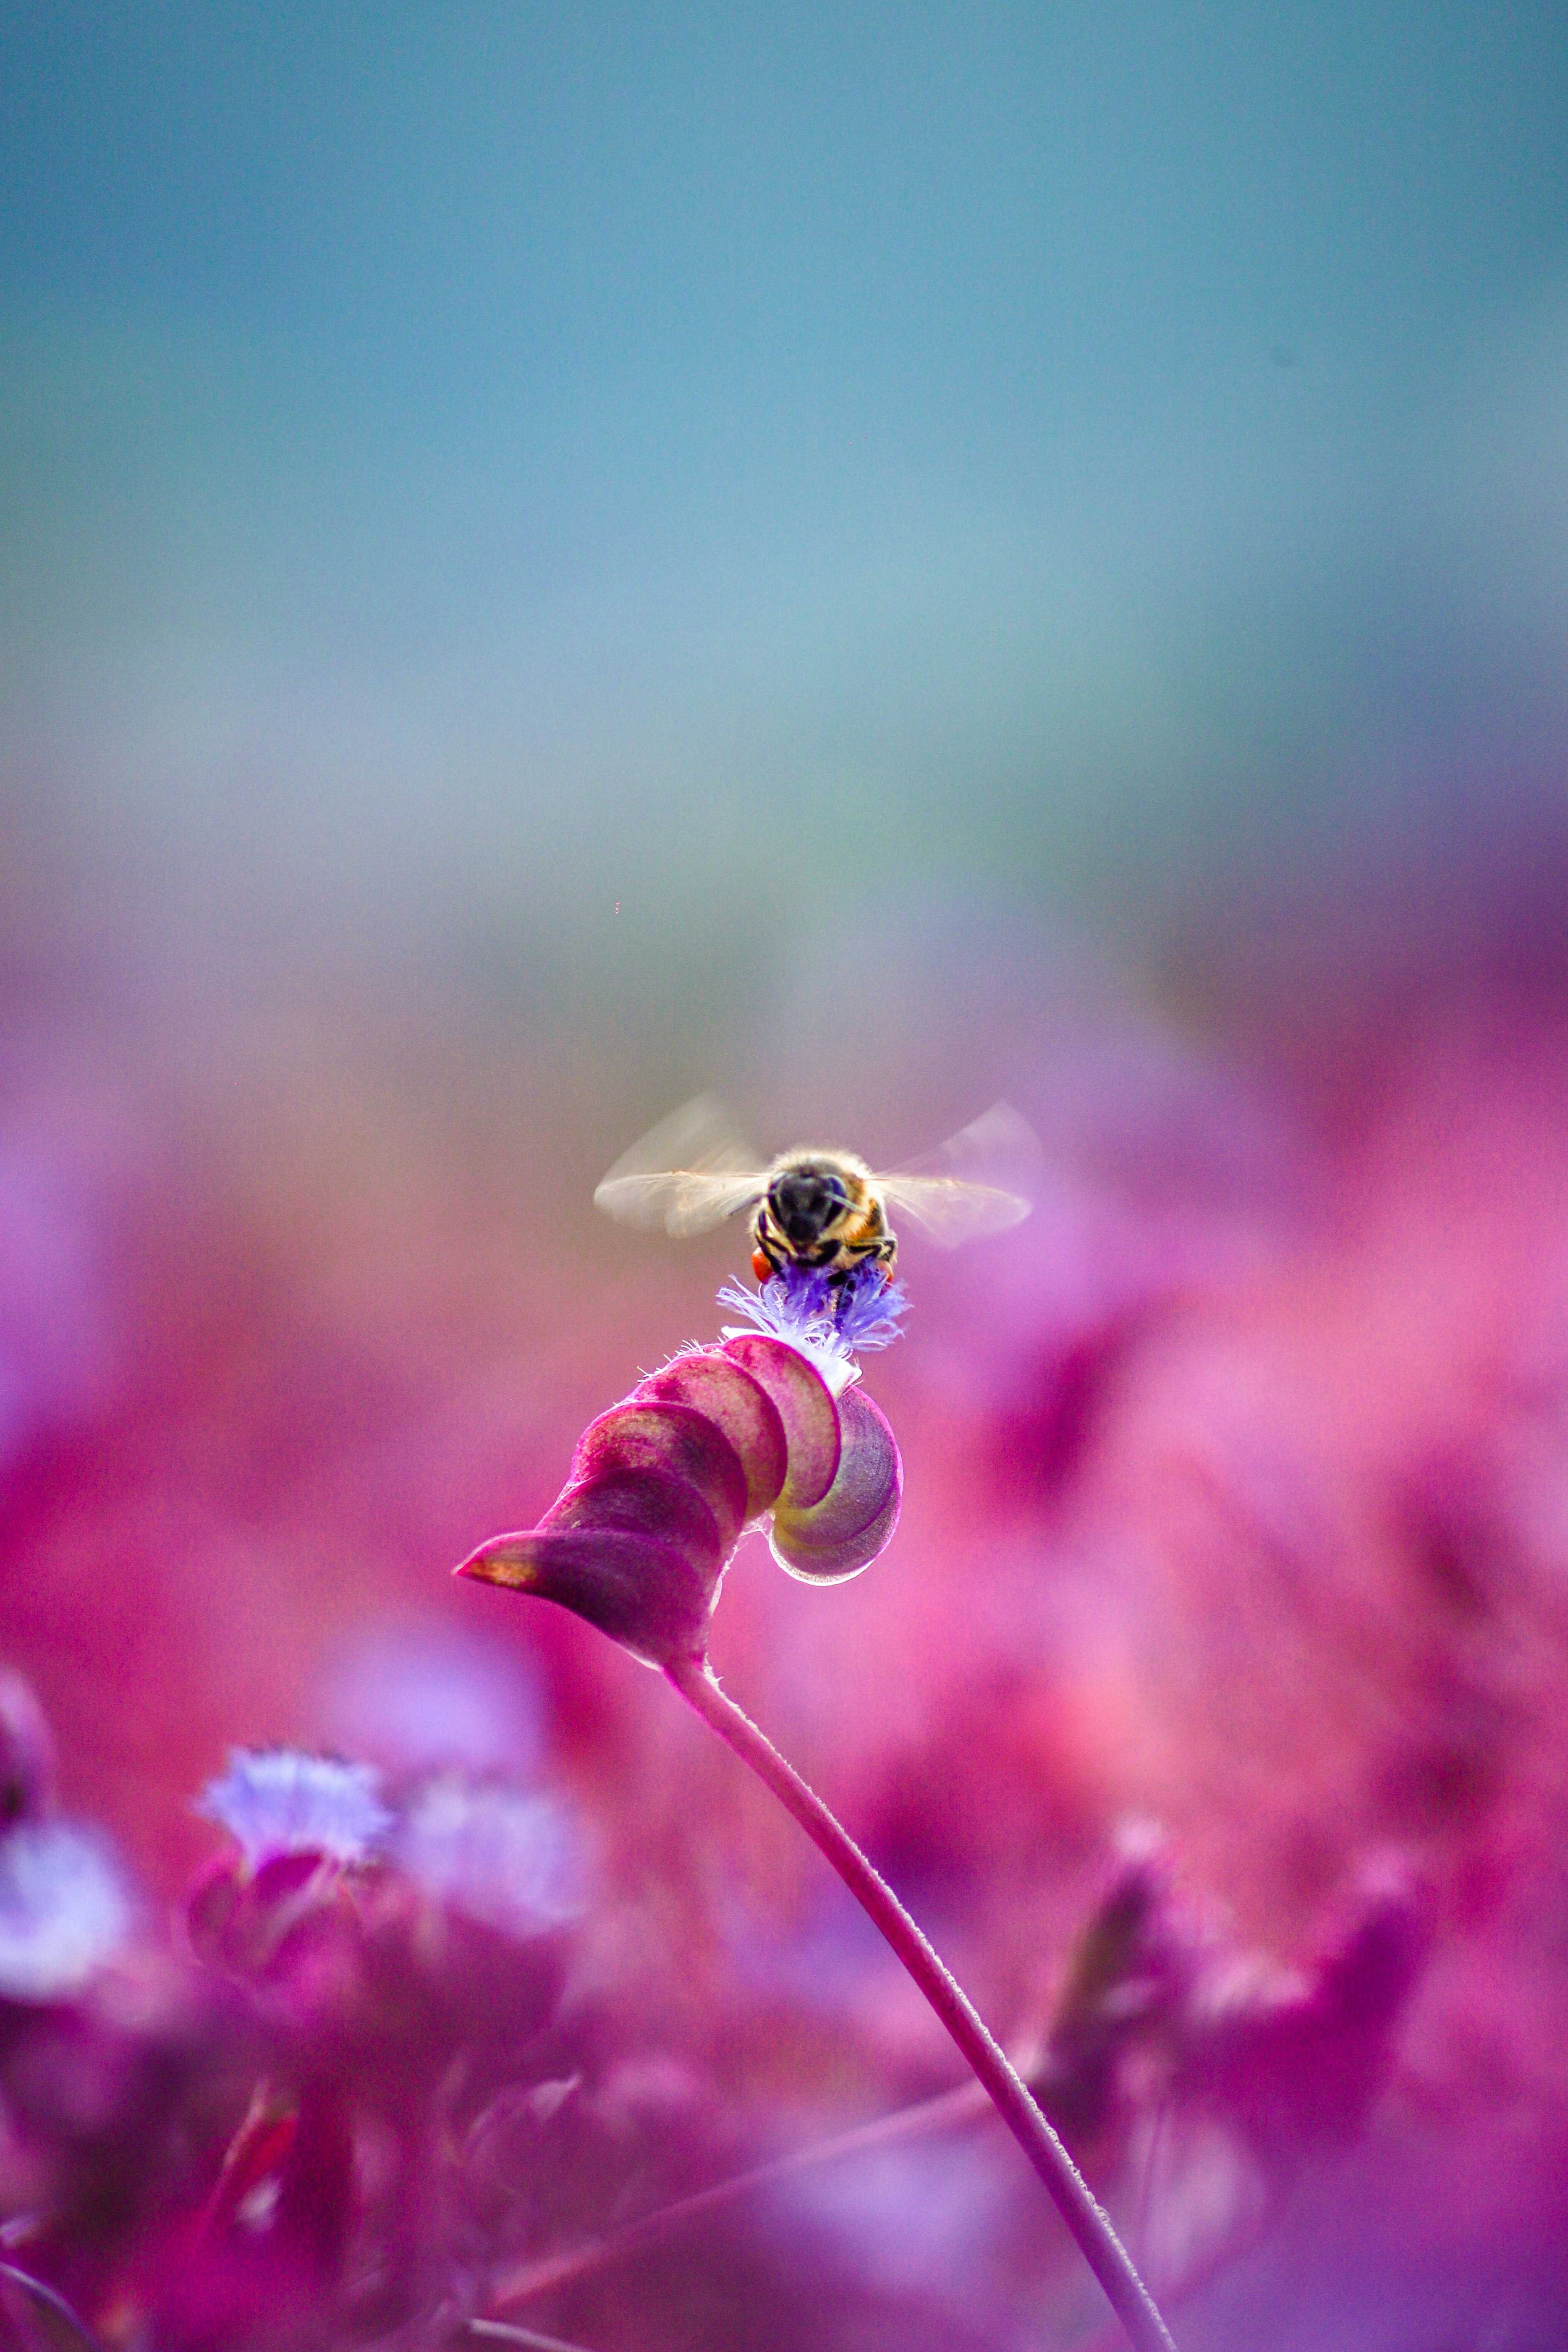 Beauty of honey bee